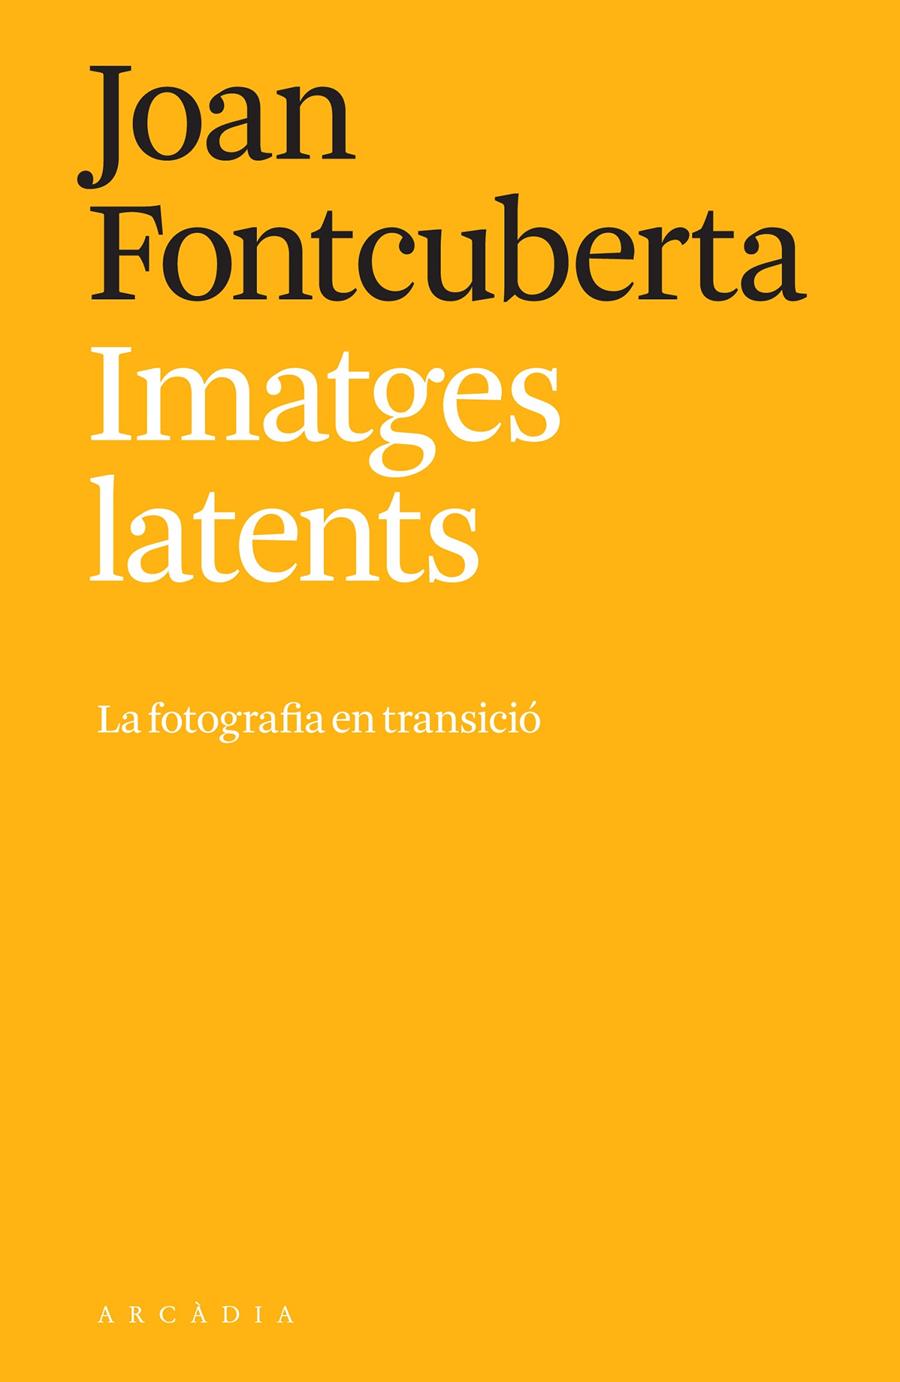 Imatges latents | Fontcuberta, Joan | Cooperativa autogestionària